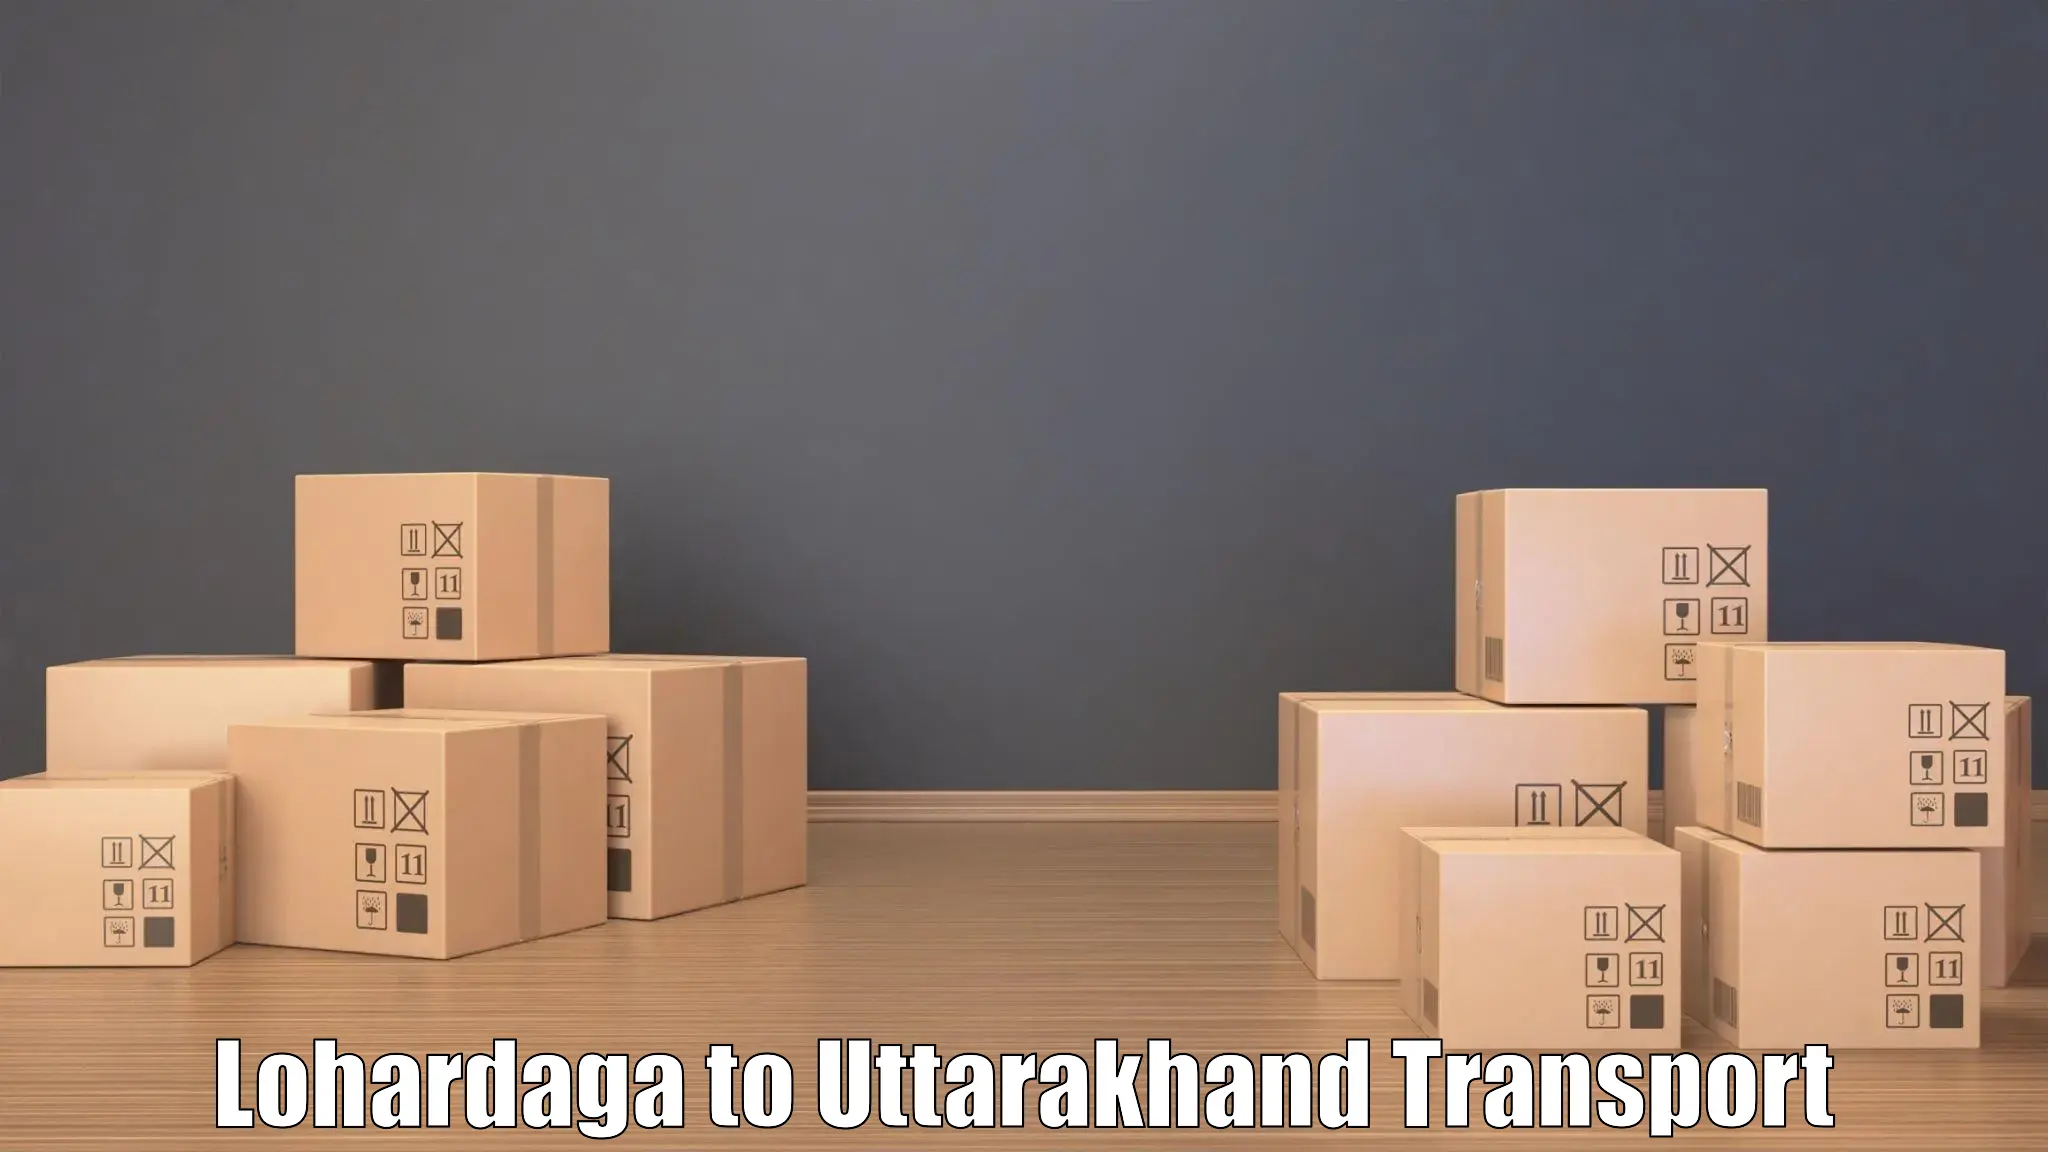 Two wheeler transport services Lohardaga to IIT Roorkee